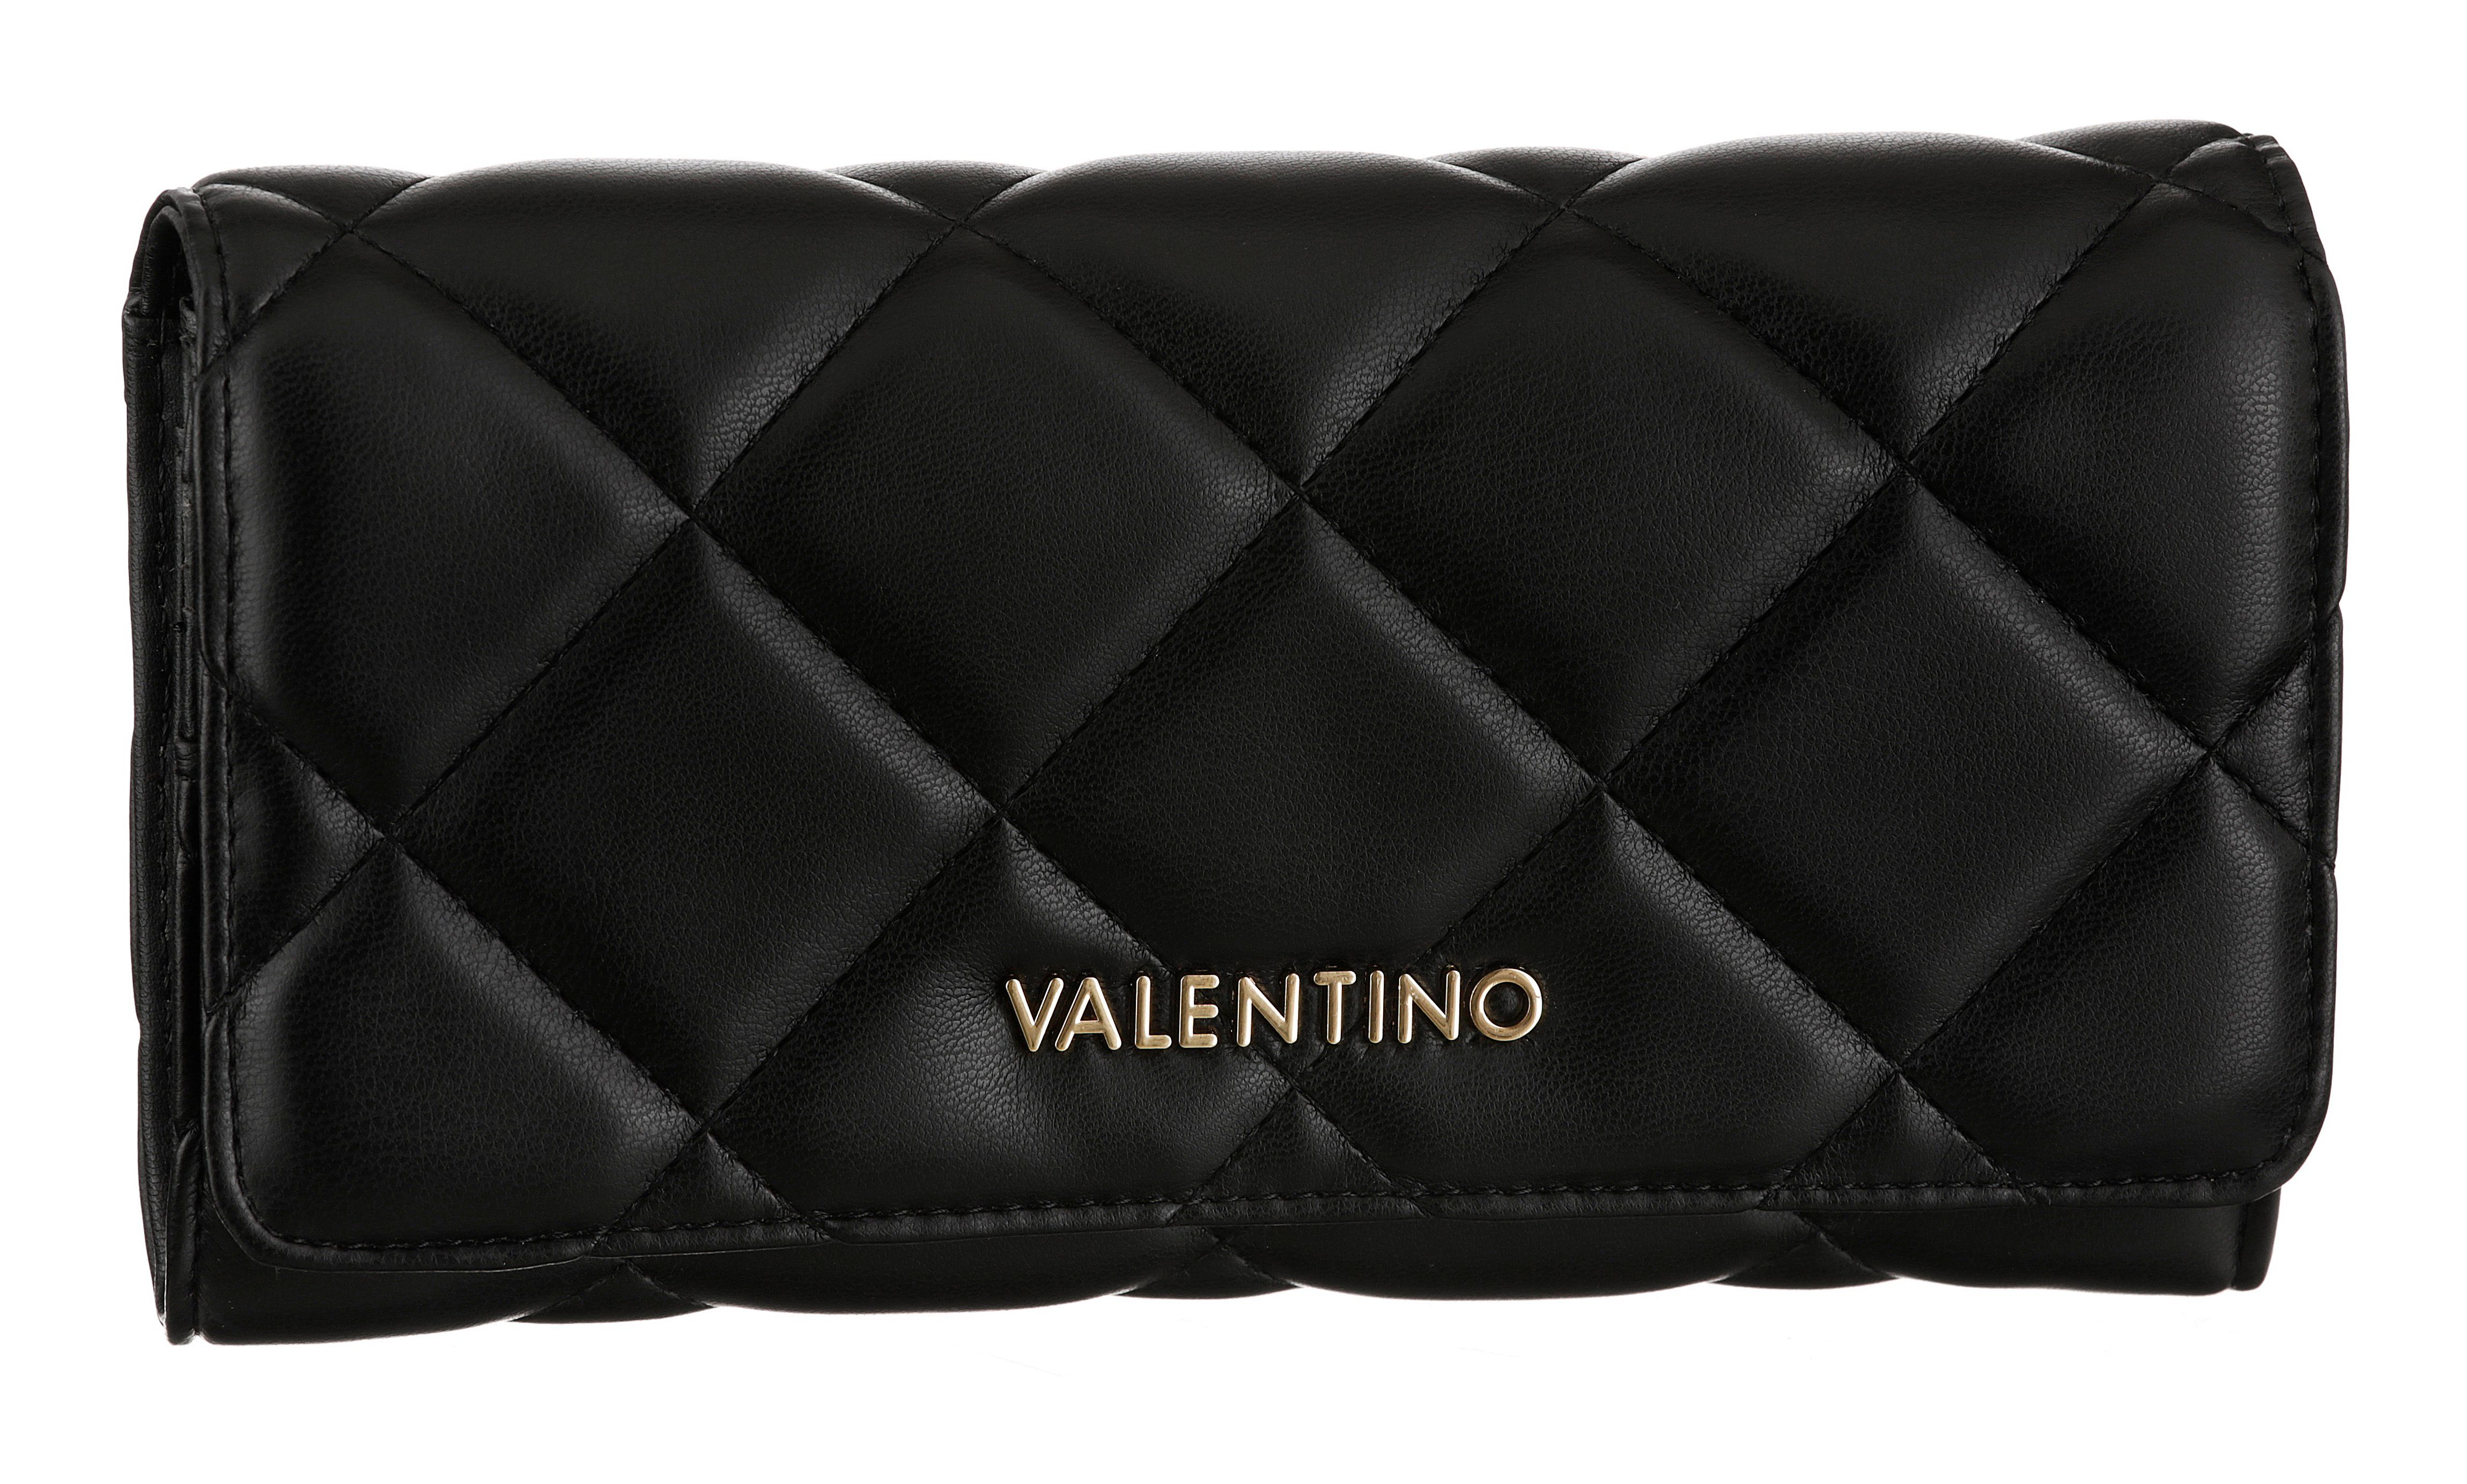 VALENTINO BAGS Geldbörse OCARINA, mit schöner Ziersteppung schwarz